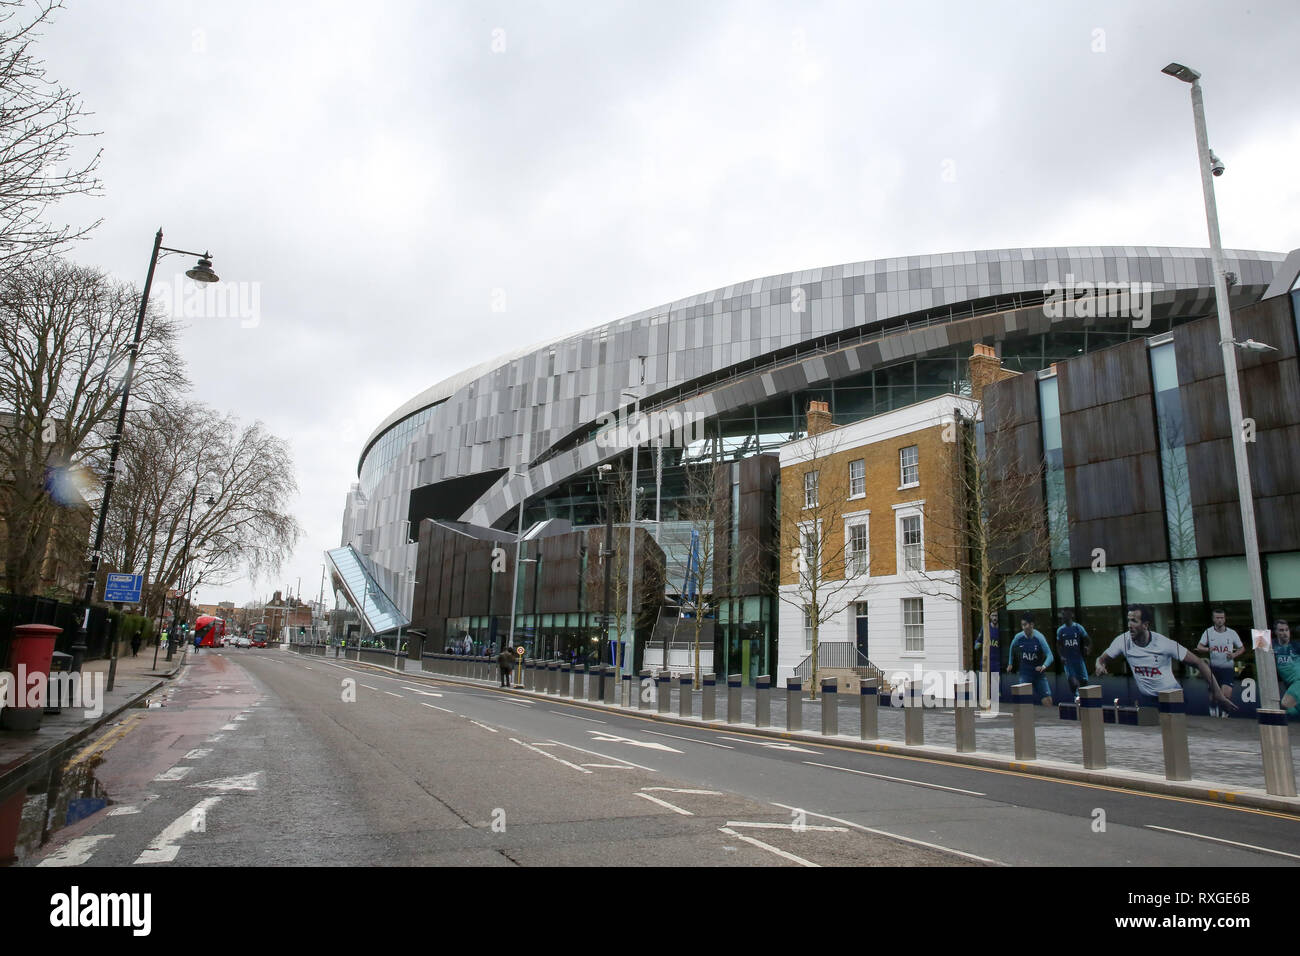 Vue du nouveau stade. Selon Tottenham Football Club, leur premier match compétitif à leur nouvelle capacité 62 000 stade sera contre Brighton ou le palais de cristal à la première semaine d'avril comme travailleurs sont vus mettre la touche finale à son stade à White Hart Lane. Banque D'Images